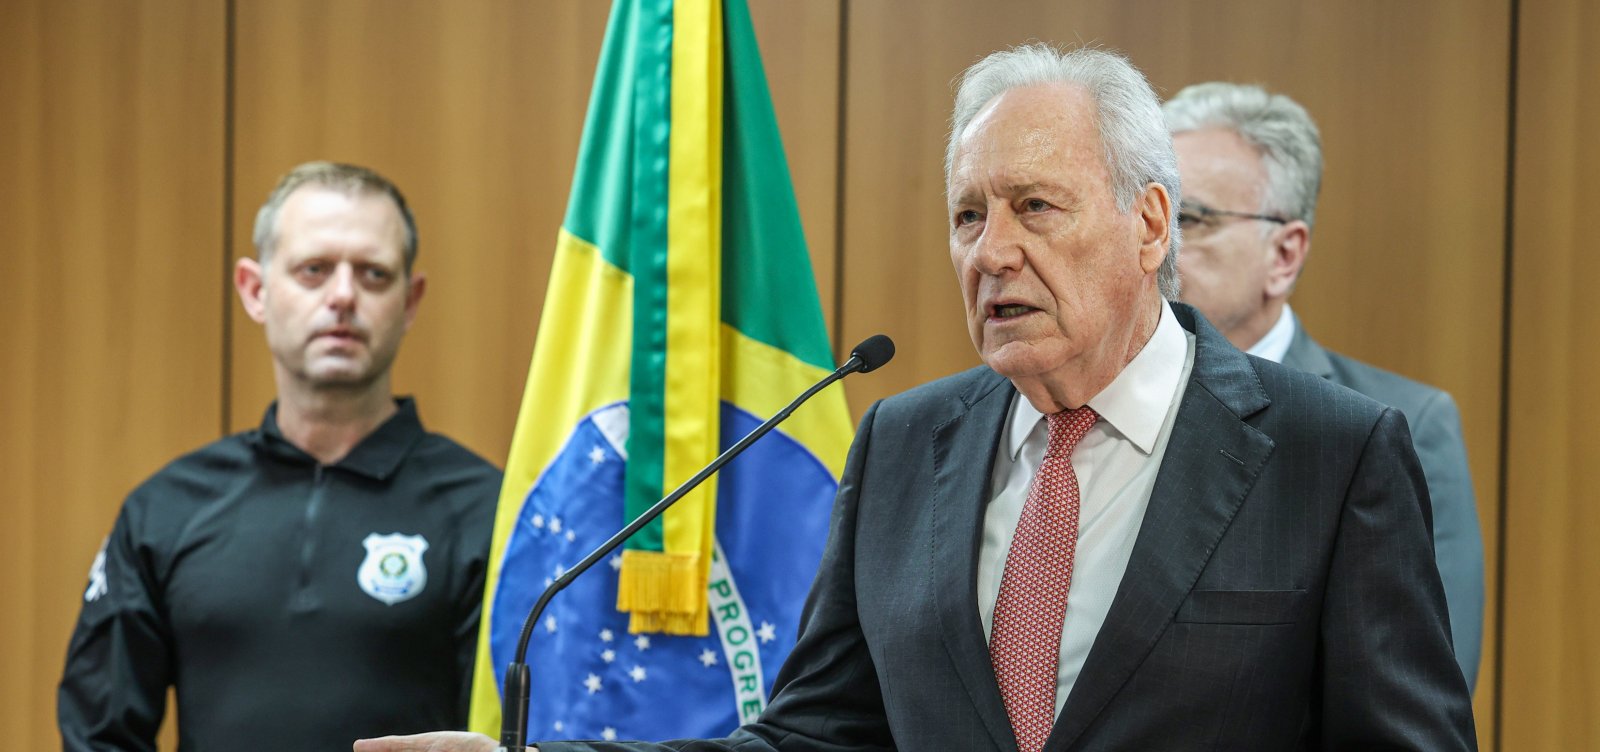 Lewandowski celebra captura dos fugitivos de Mossoró: "vitória do Estado brasileiro"